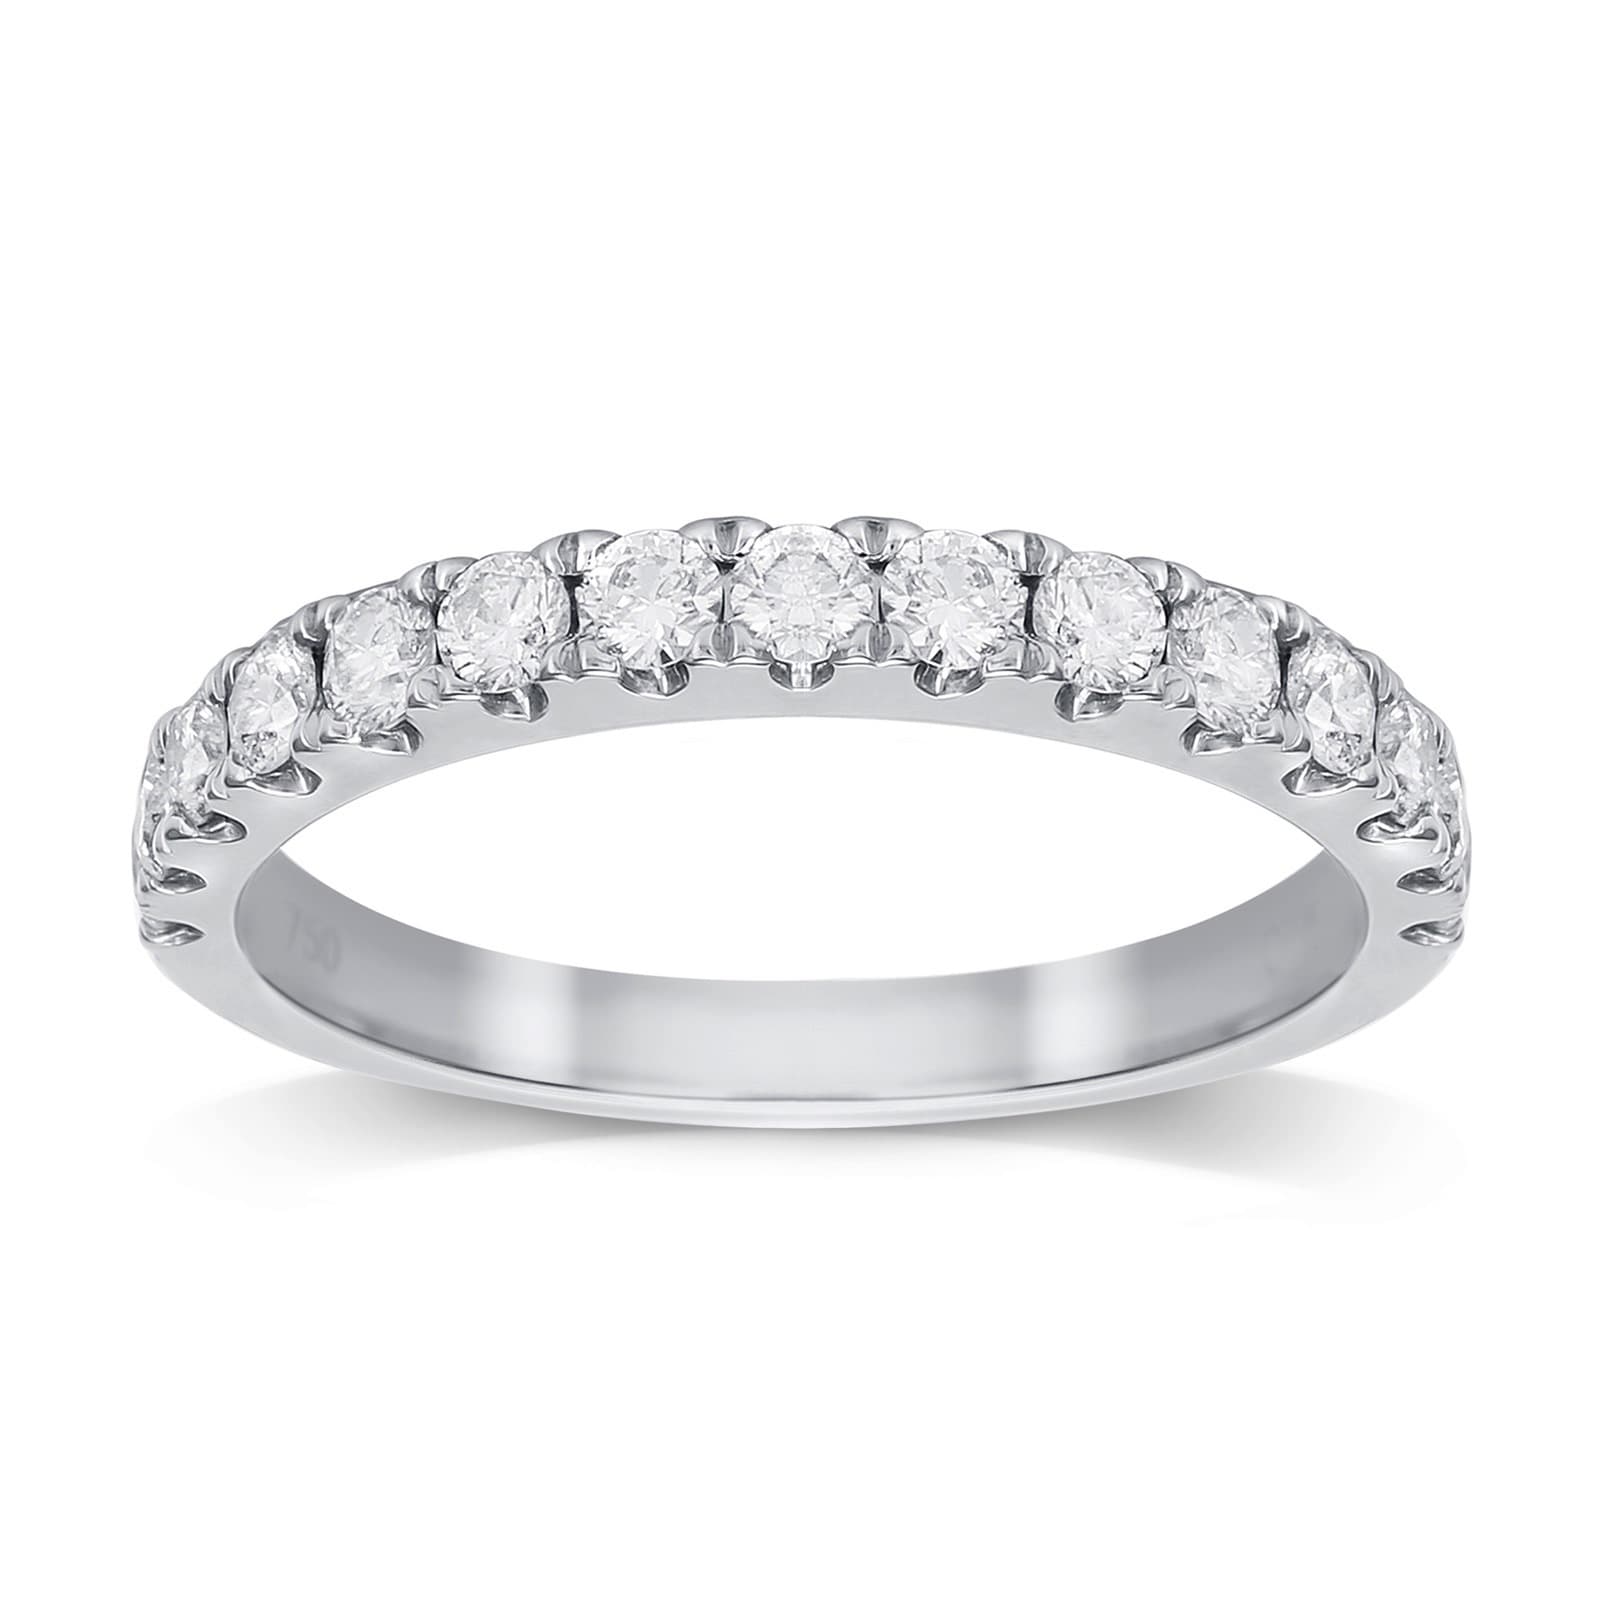 Rings, Gold & Silver Diamond Commitment & Promise Rings for Women & Men ...